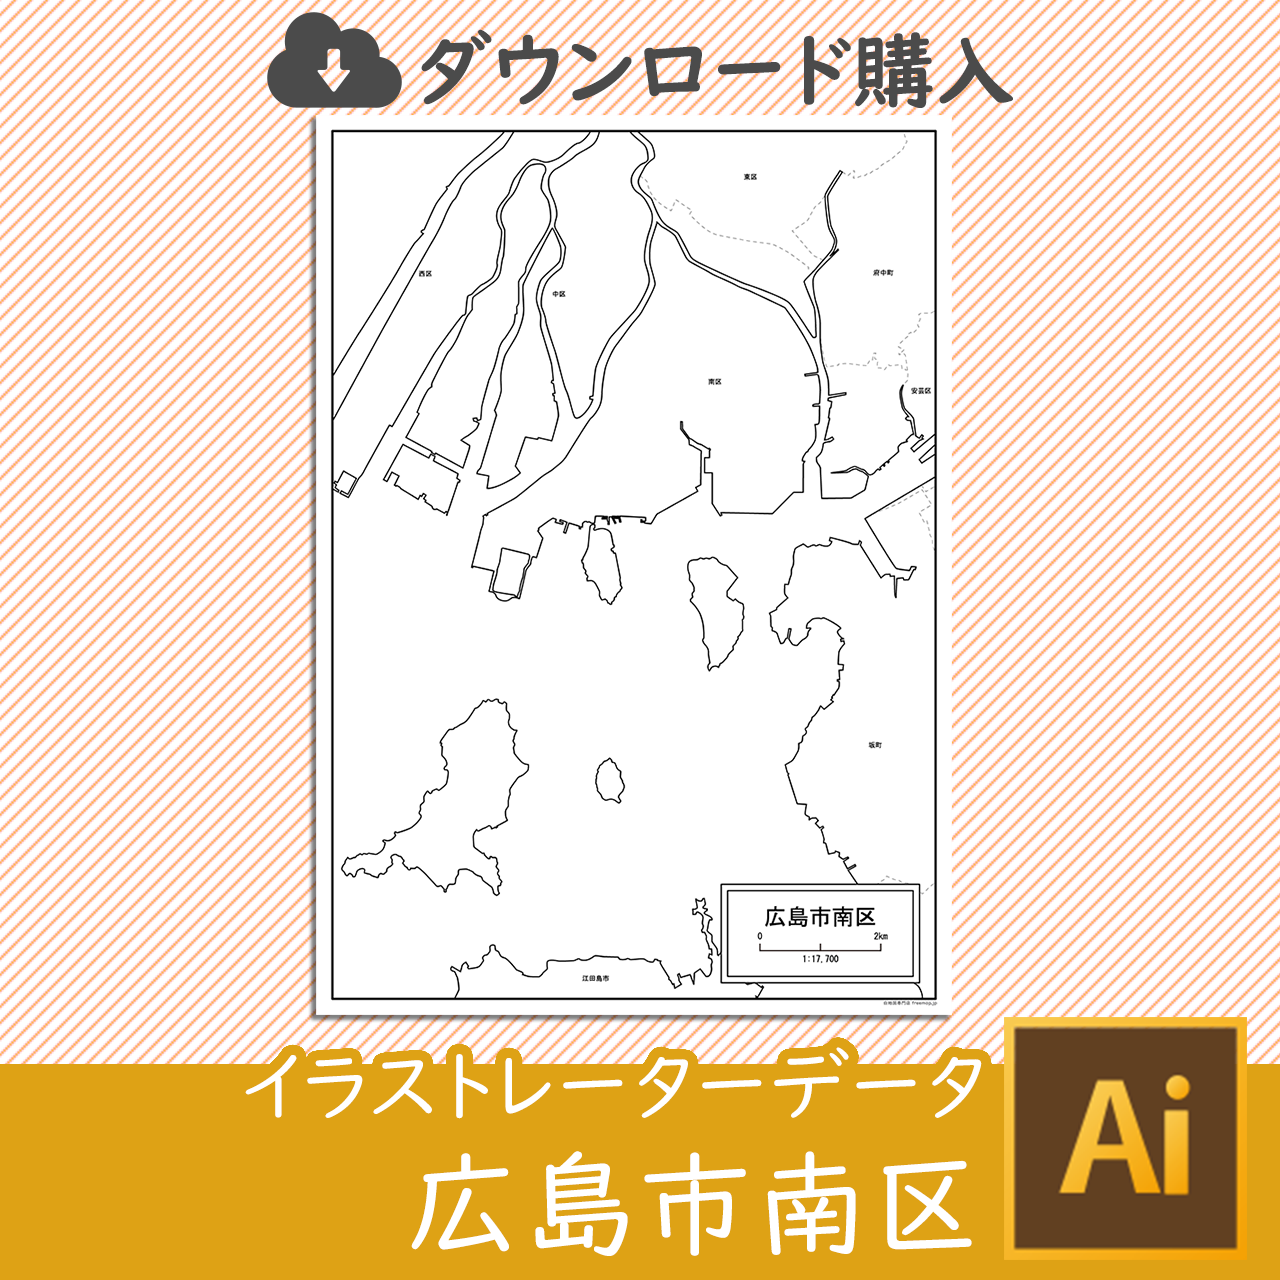 広島市南区のaiデータのサムネイル画像